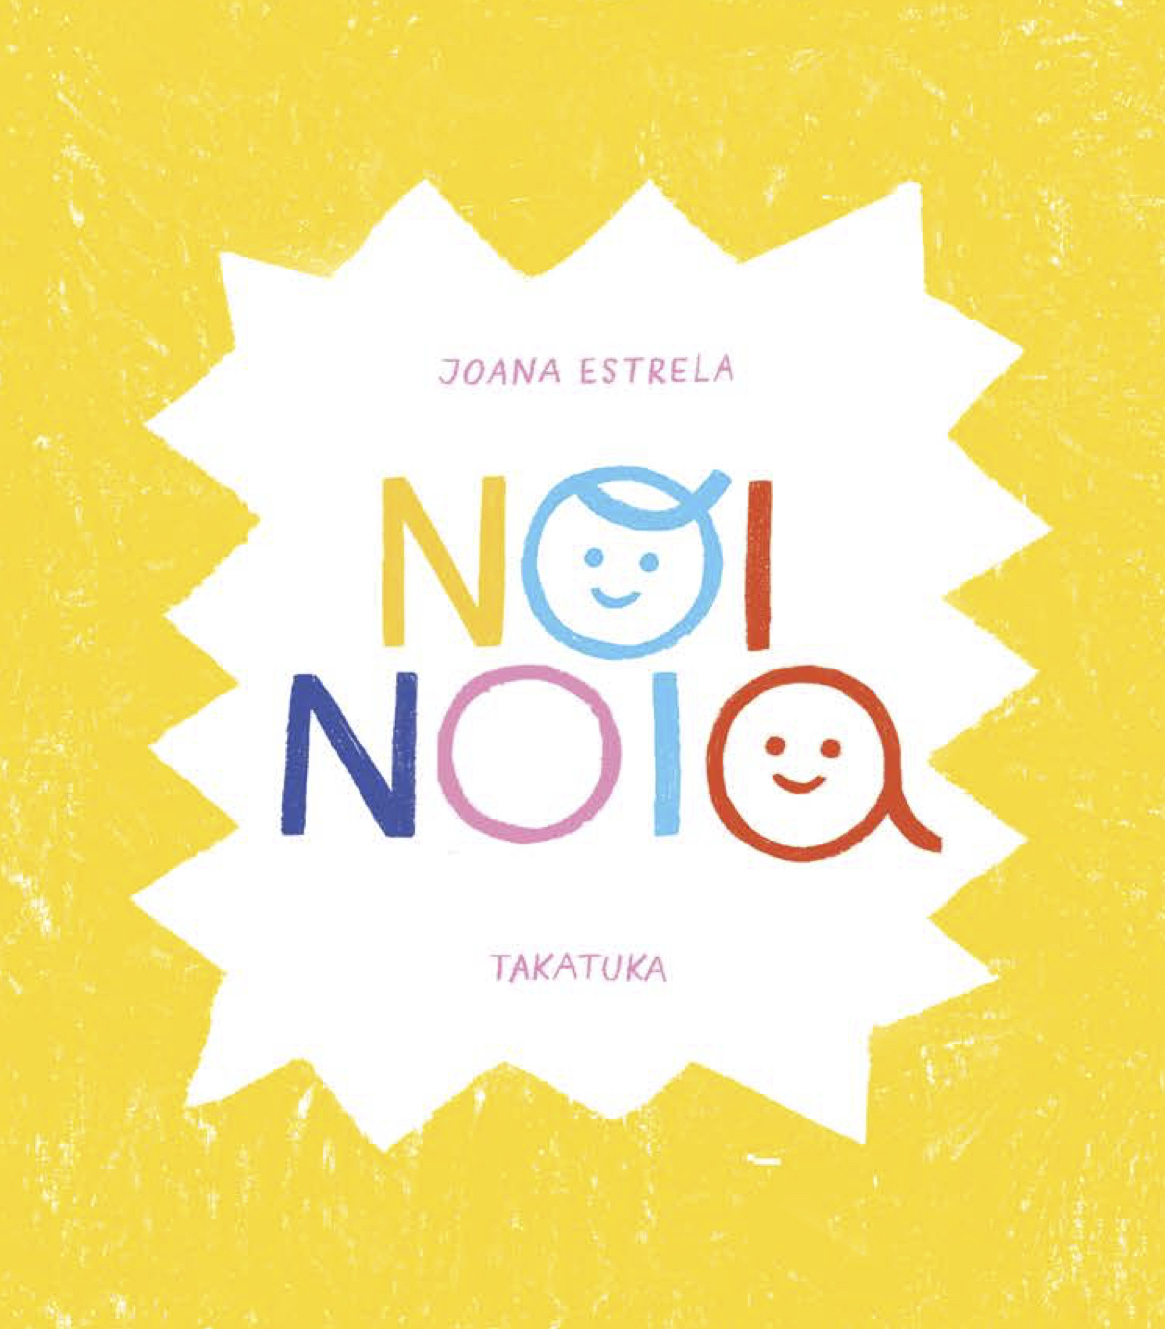 NOI NOIA - Joana Estrela